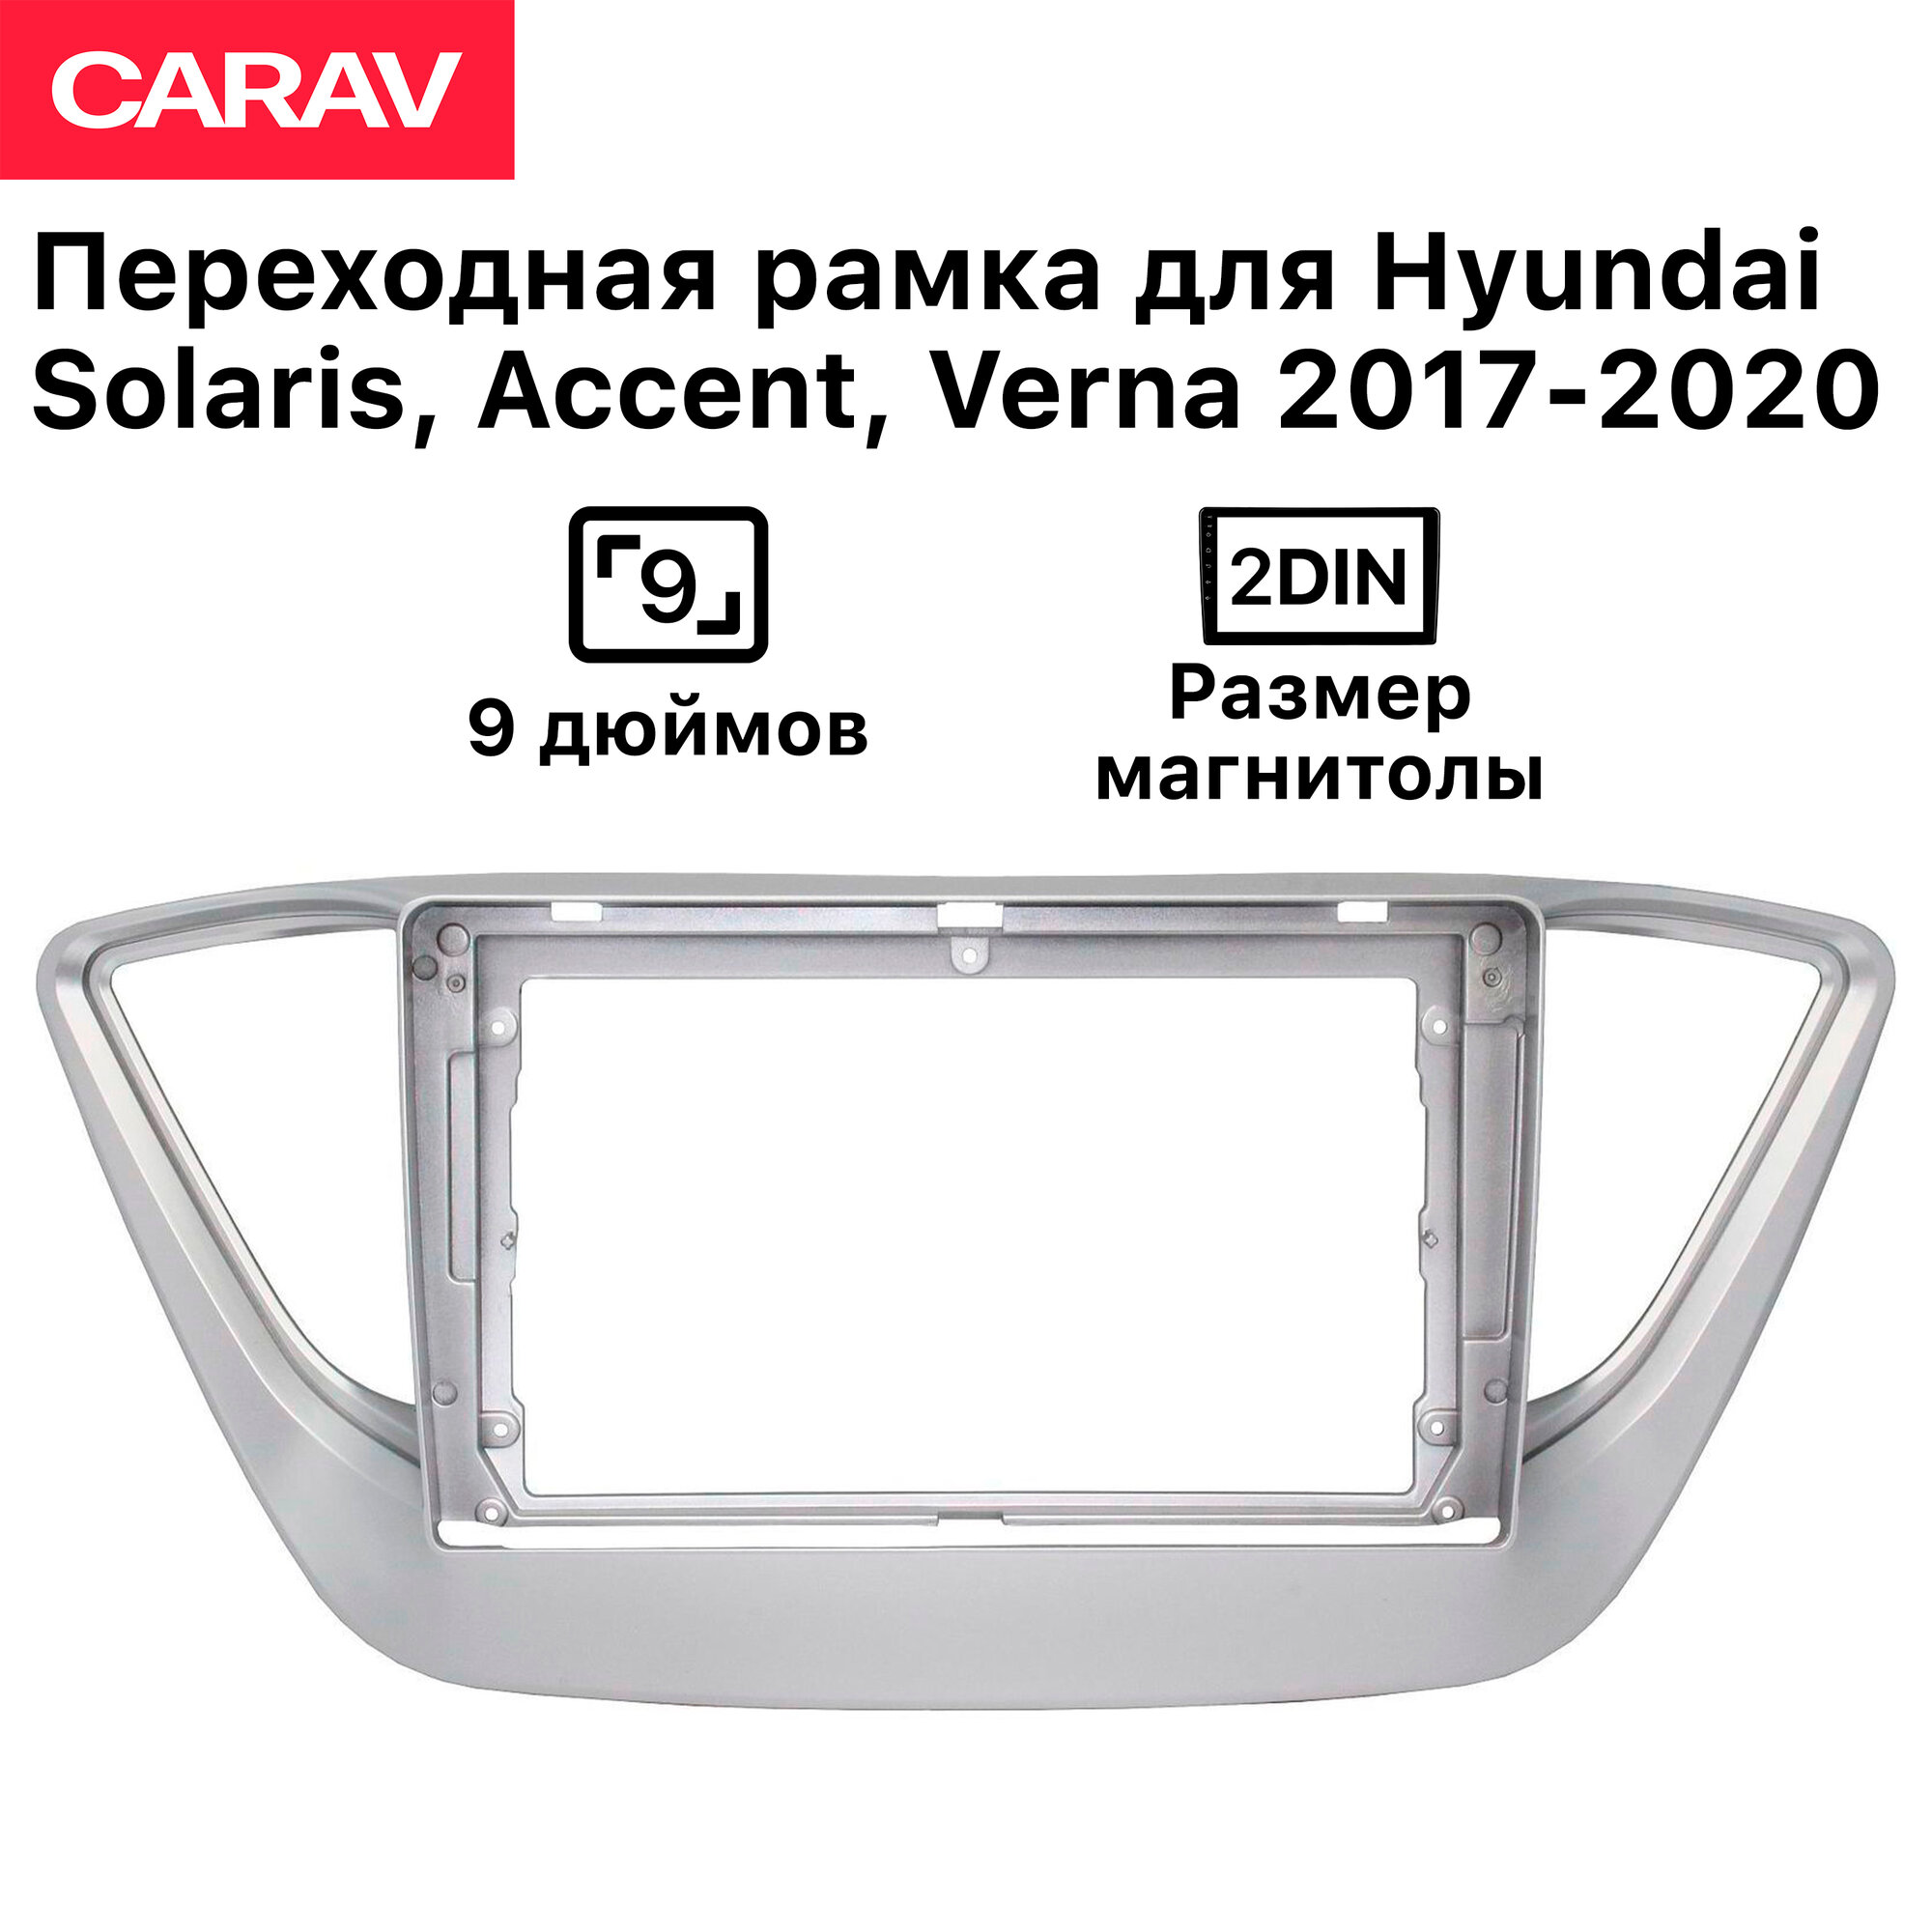 Рамка Carav для магнитолы 2din для Hyundai Solaris 2017-2020 9 дюймов